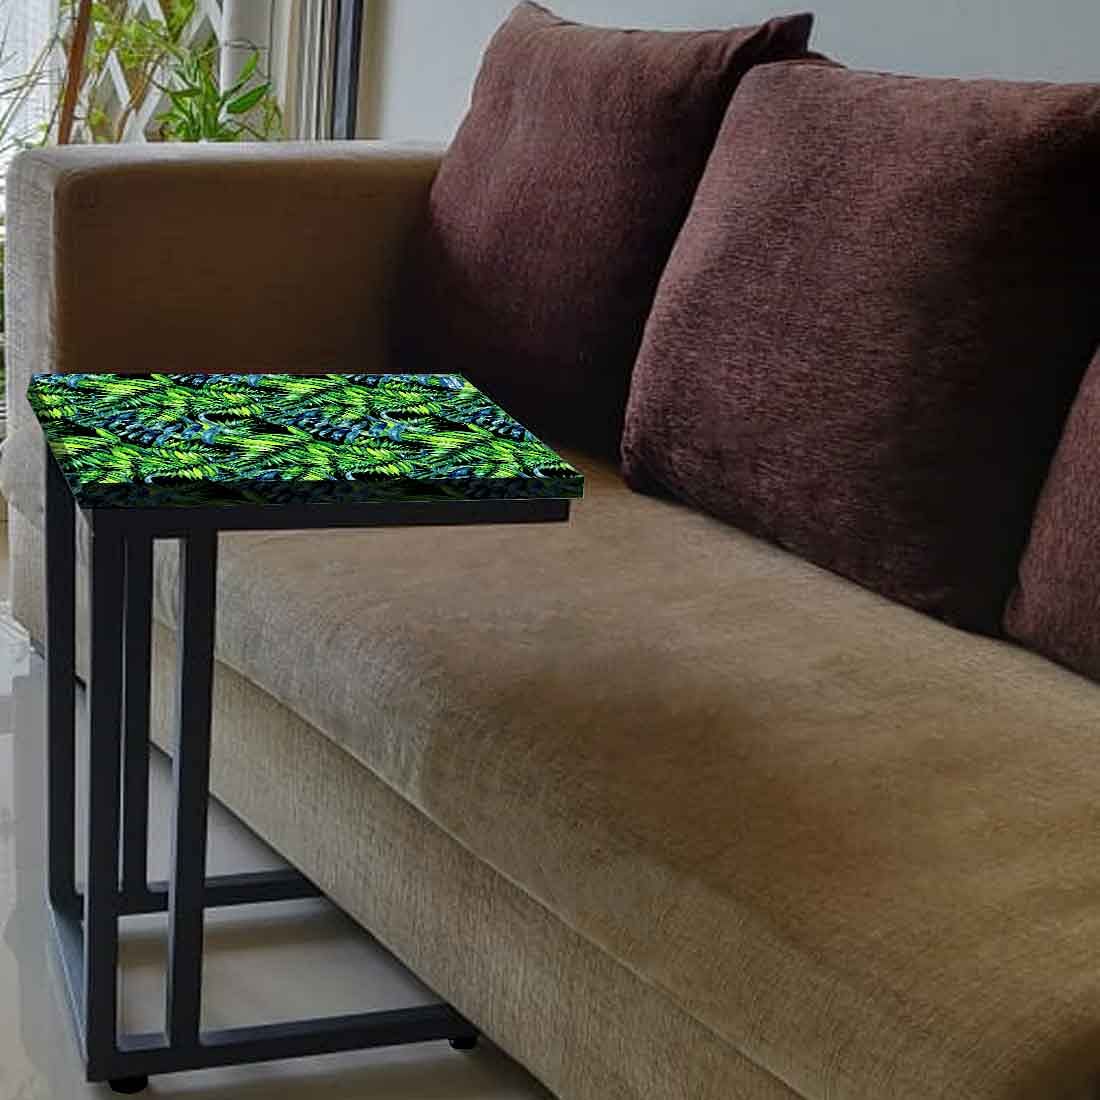 Latest Bedside C Table - Green Black Leaf Nutcase